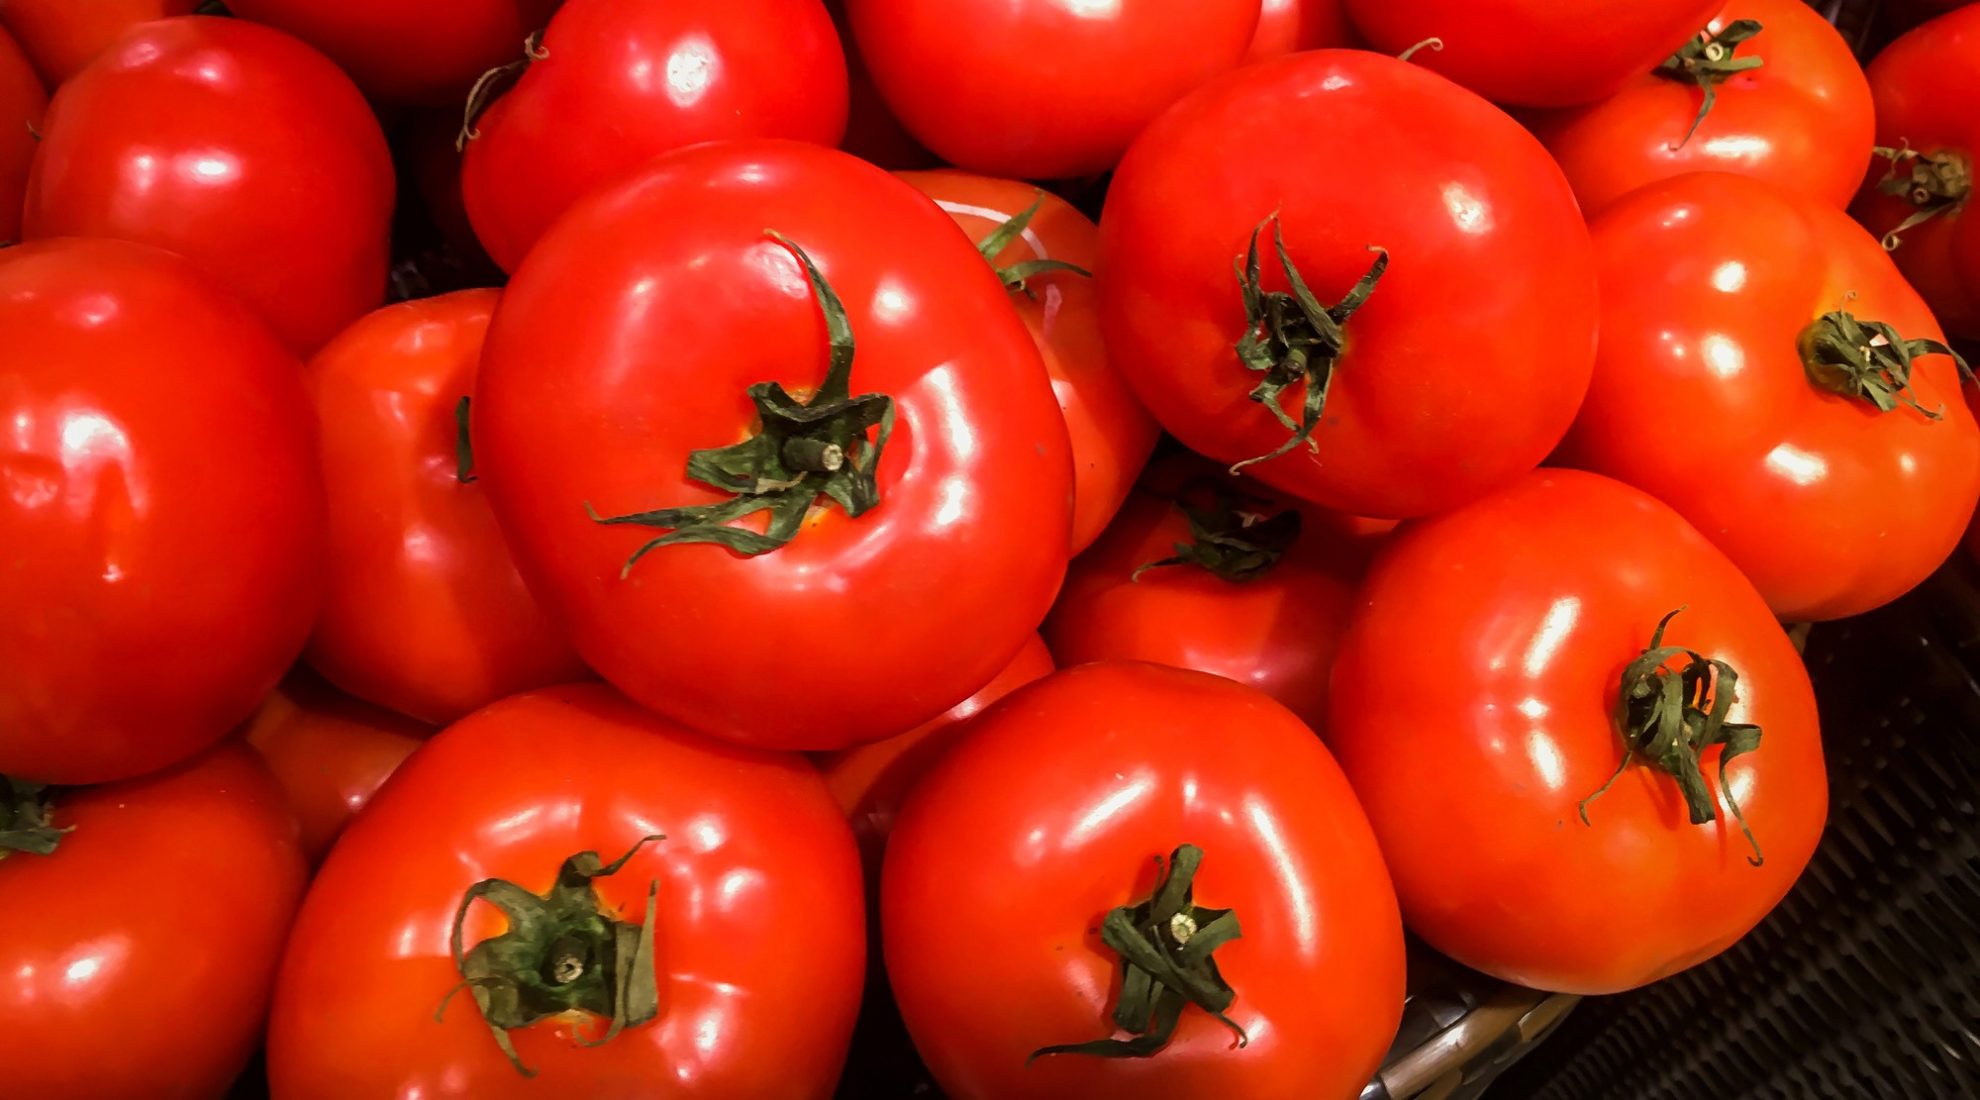 Pomidorai – viena populiariausių daržovių visame pasaulyje, panašiai kaip ir bulvė, mus pasiekė tik XVI amžiuje iš Pietų Amerikos. Didžiojoje Britanijoje ilgai laikyta nuodingu dekoratyviniu augalu, šiuo metu ji varžosi su kitomis daržovėmis savo sveikatai naudingomis savybėmis ir net vadinama supermaistu.